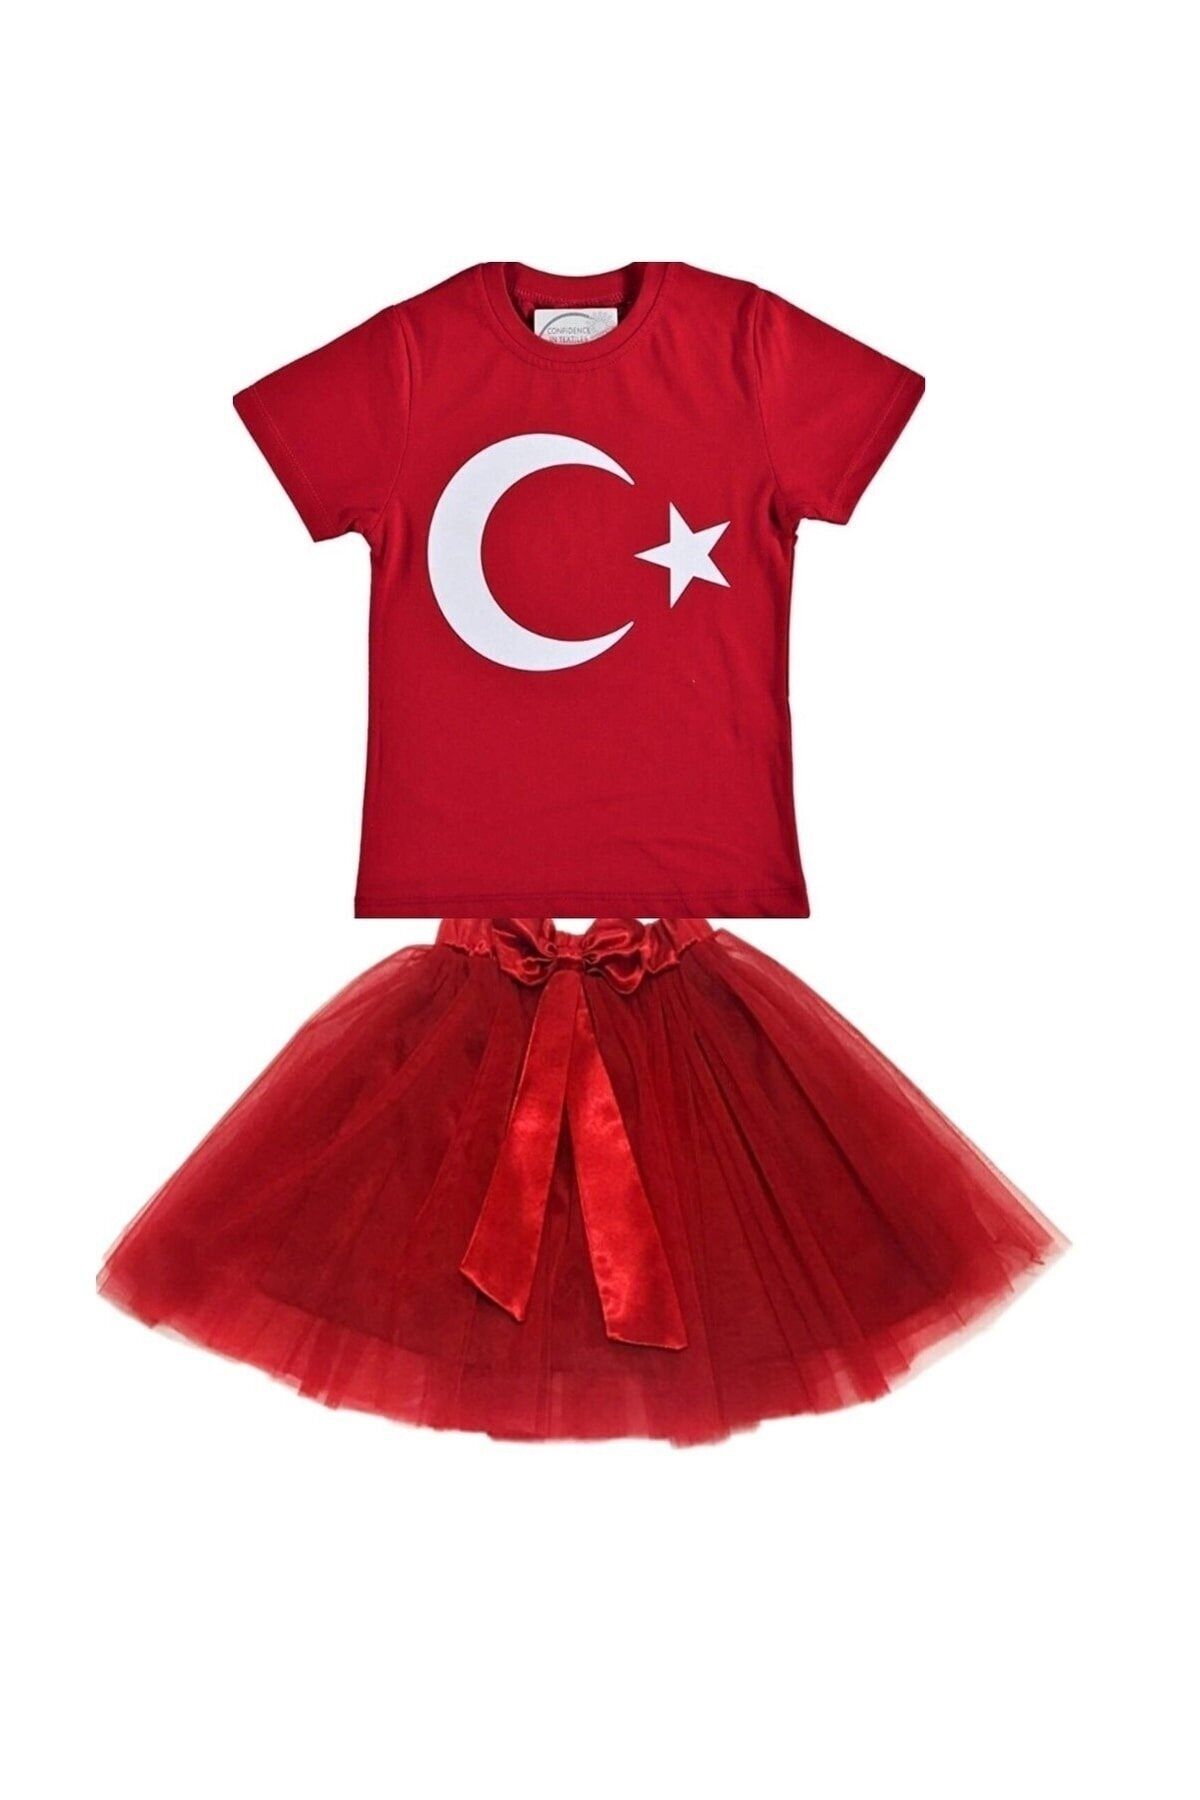 FATELLA Kız Çocuk 23 Nisan 29 Ekim Gösteri Kıyafeti Tişört Atatürk Baskılı-tütü Etek